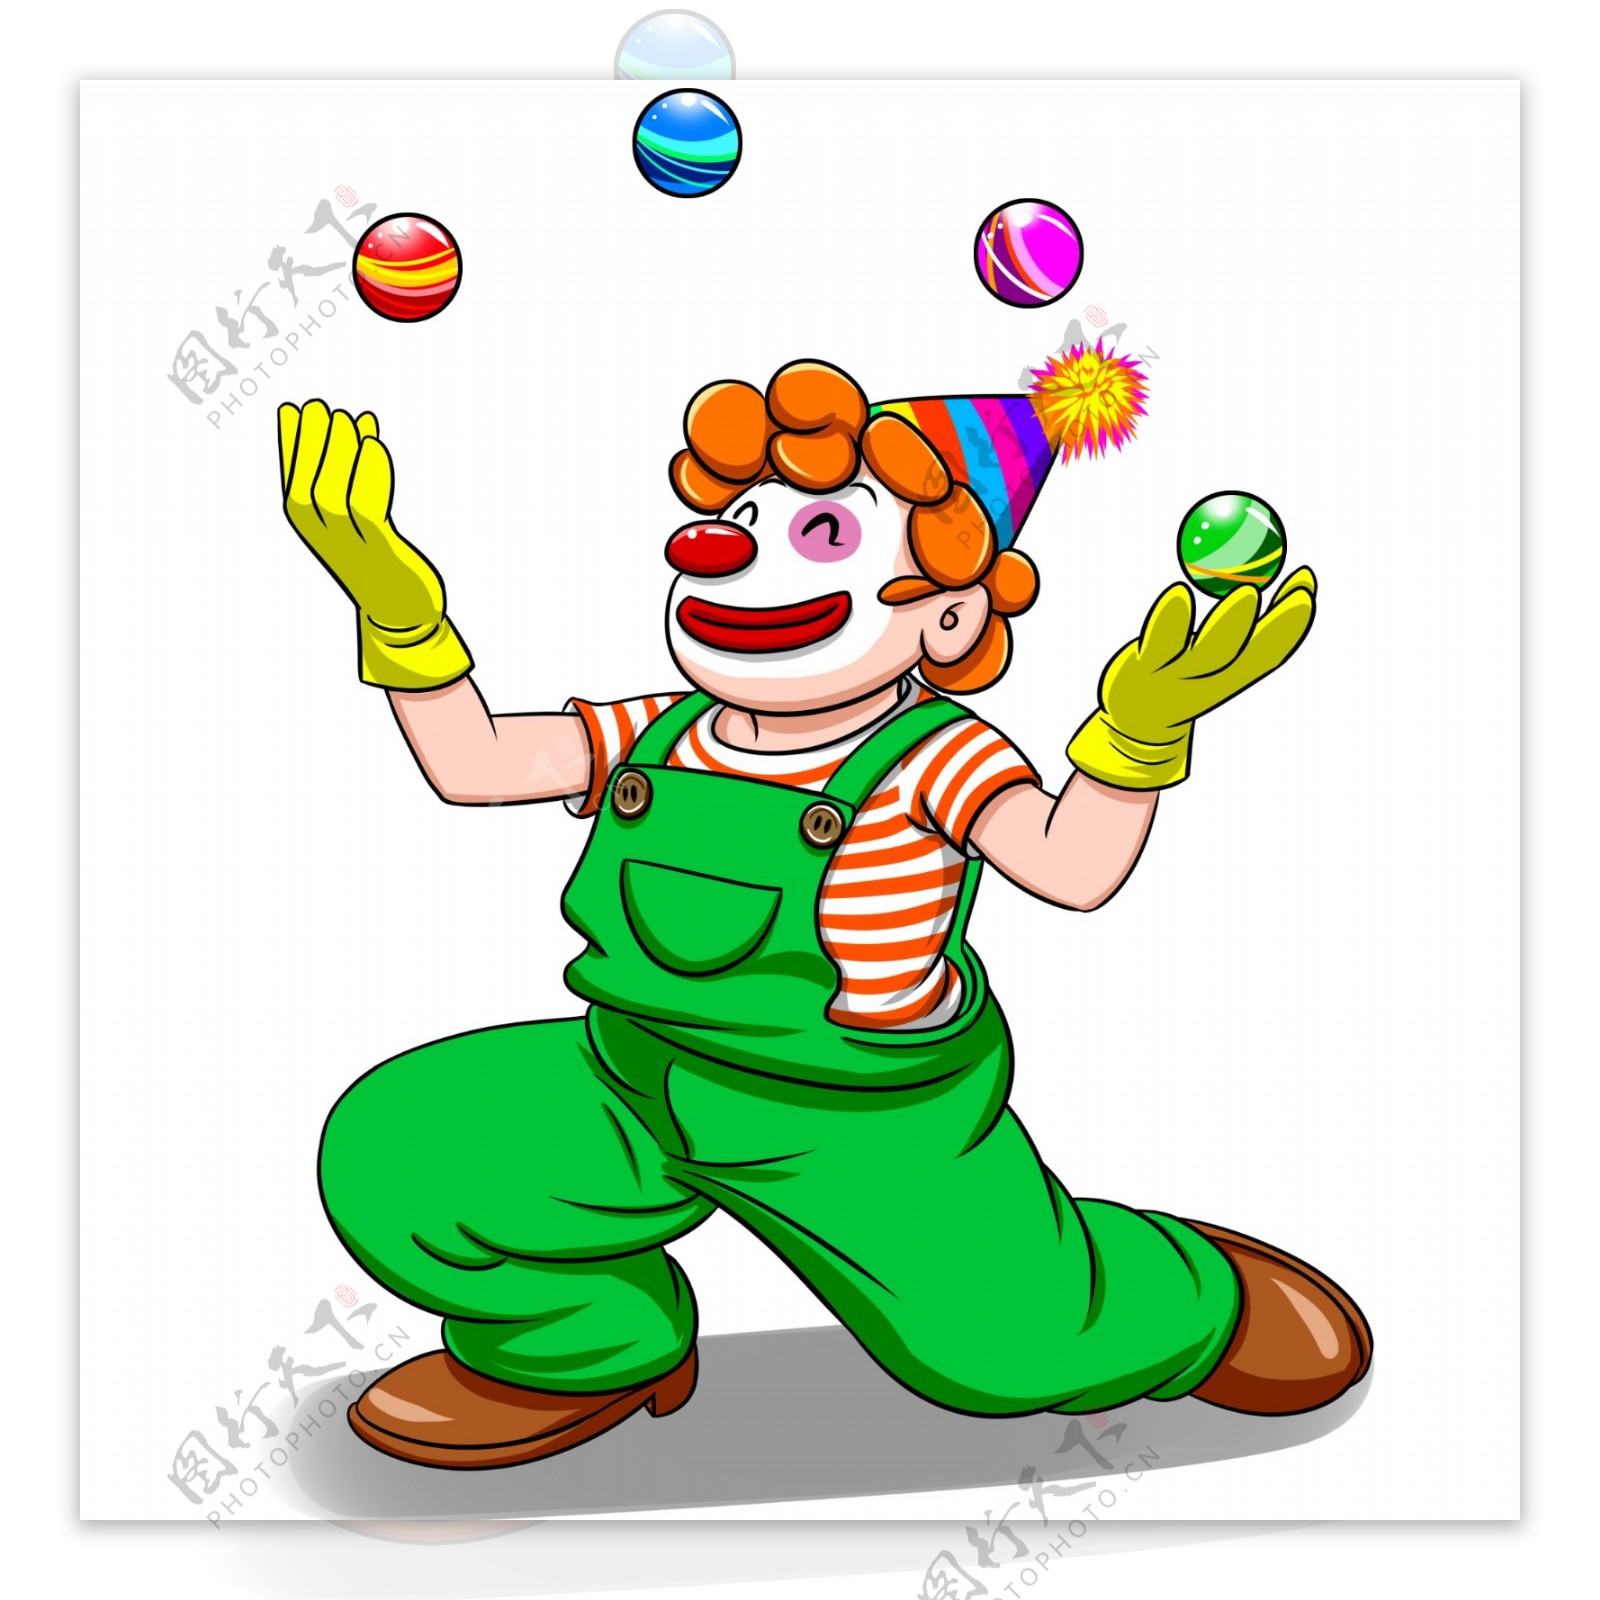 玩小球的卡通小丑愚人节可商用素材